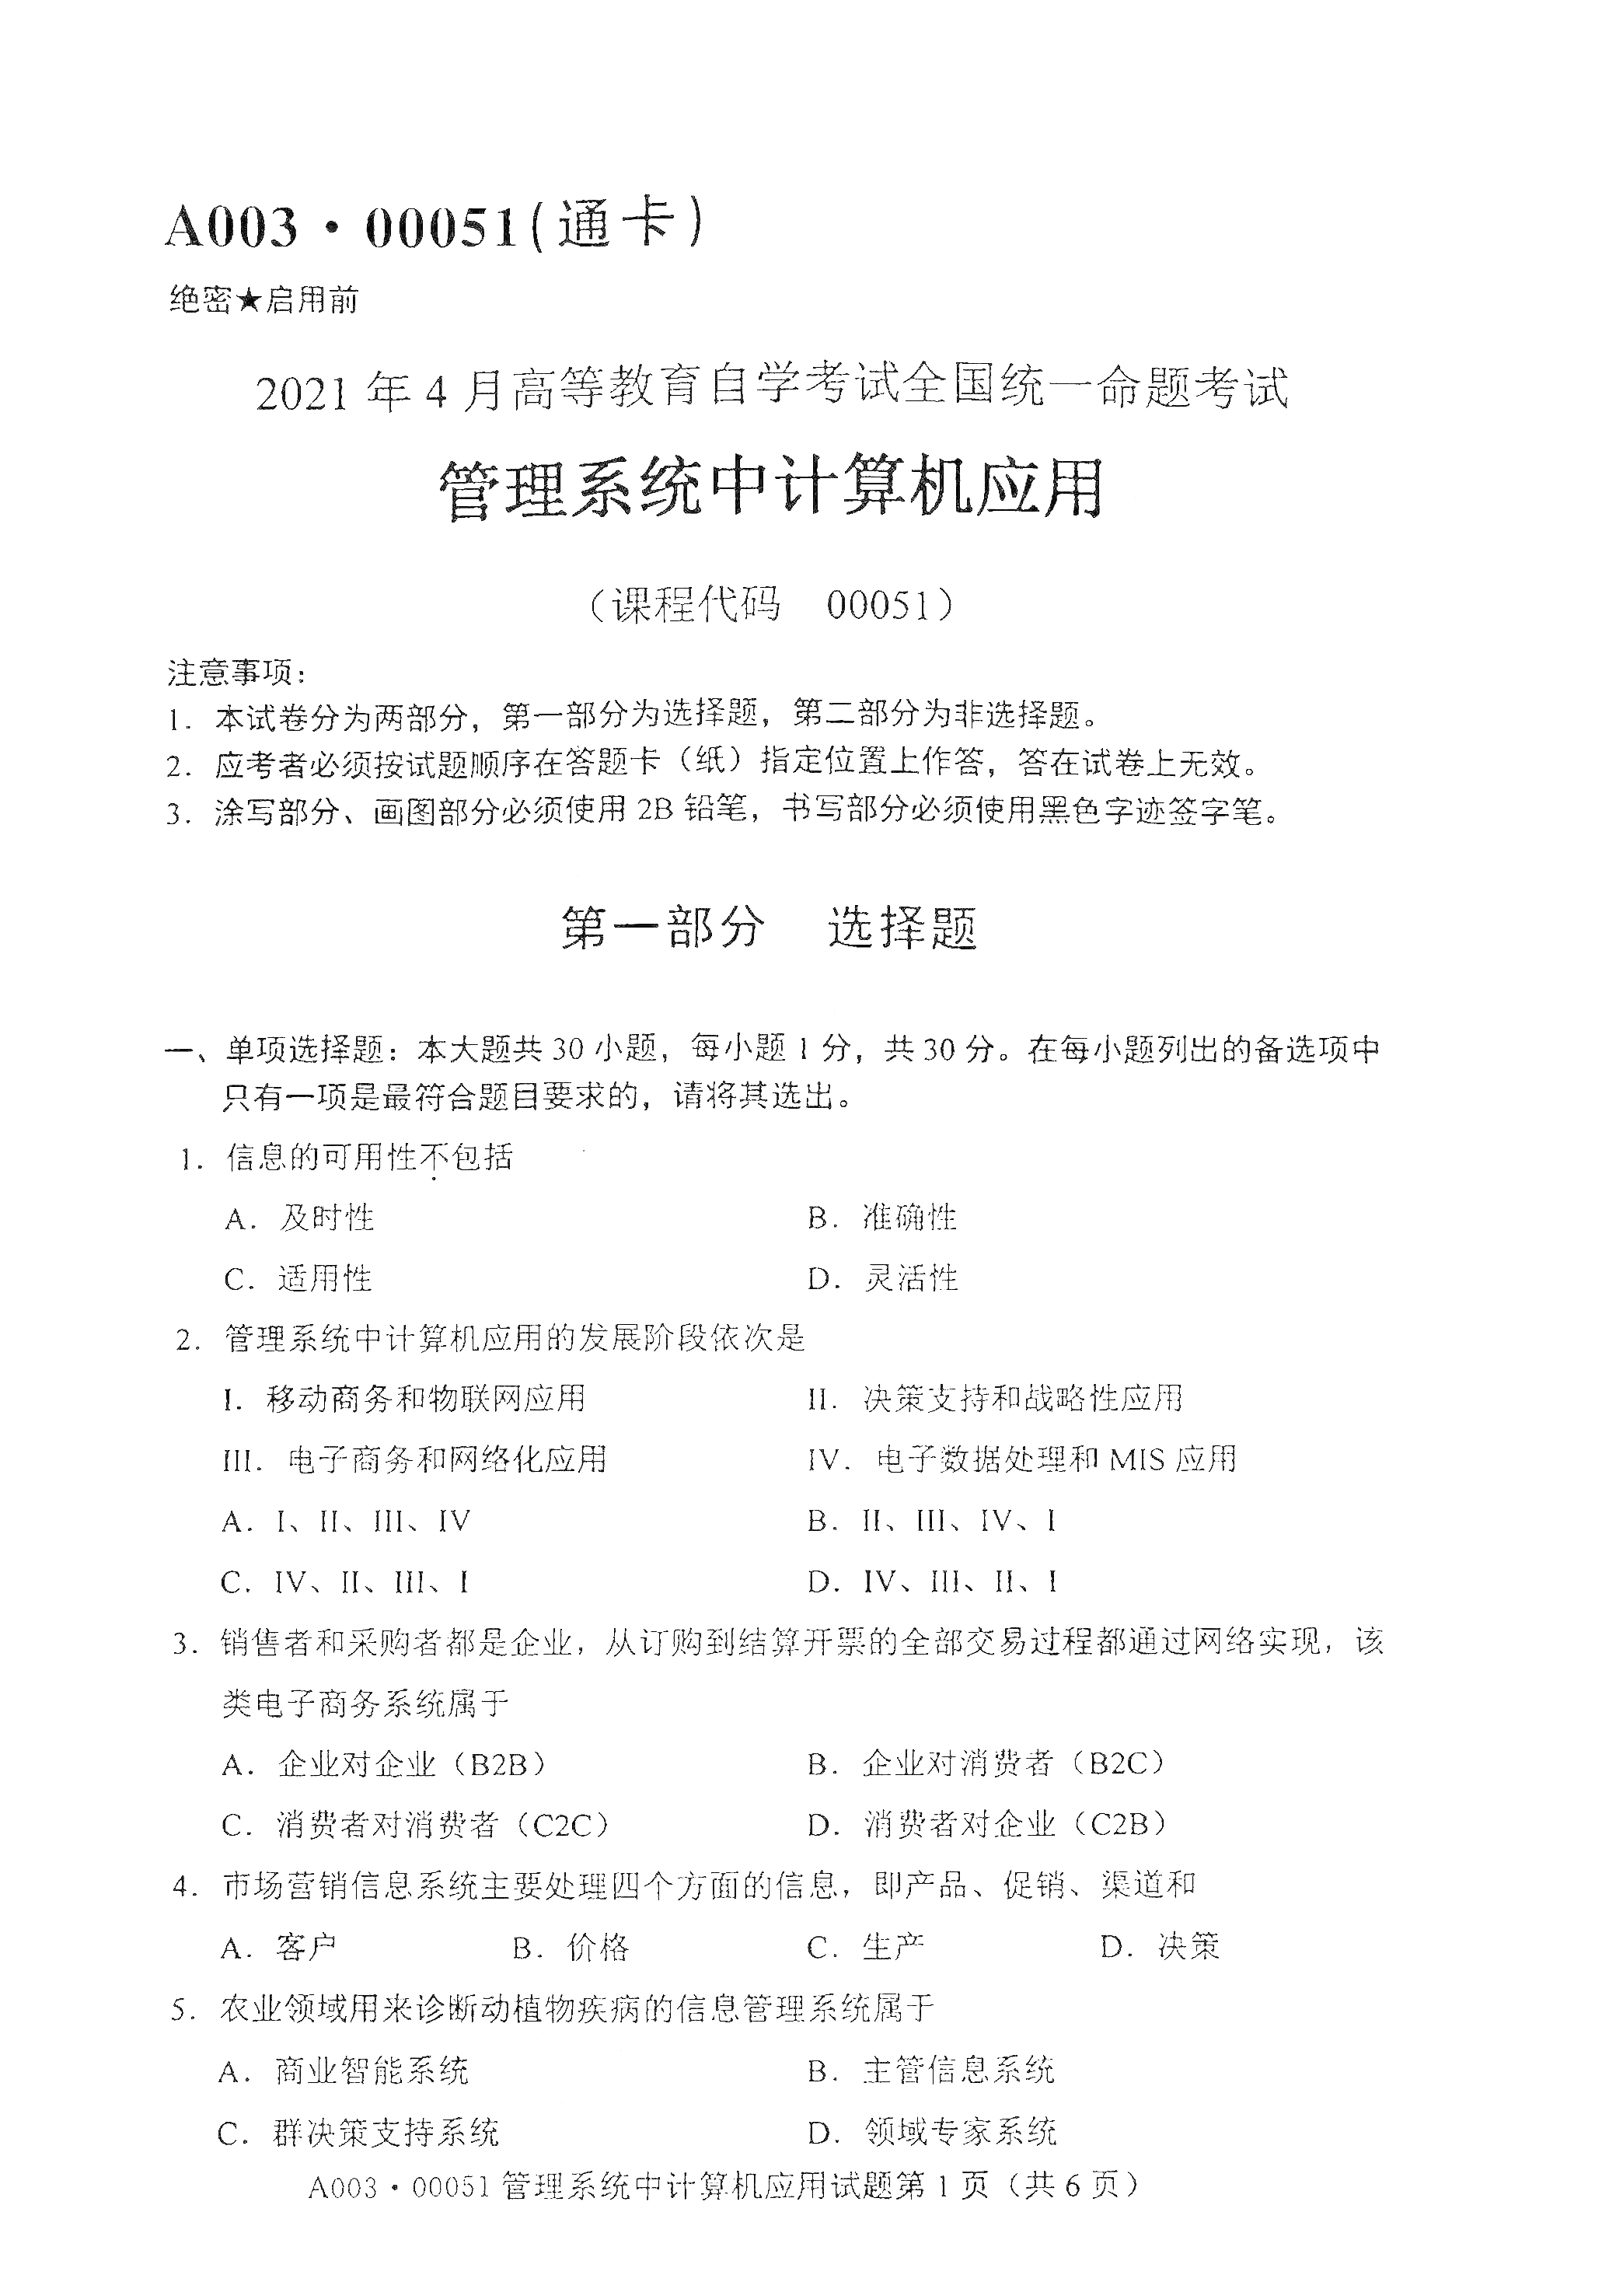 2021年4月北京自考00051管理系统中计算机应用真题试卷